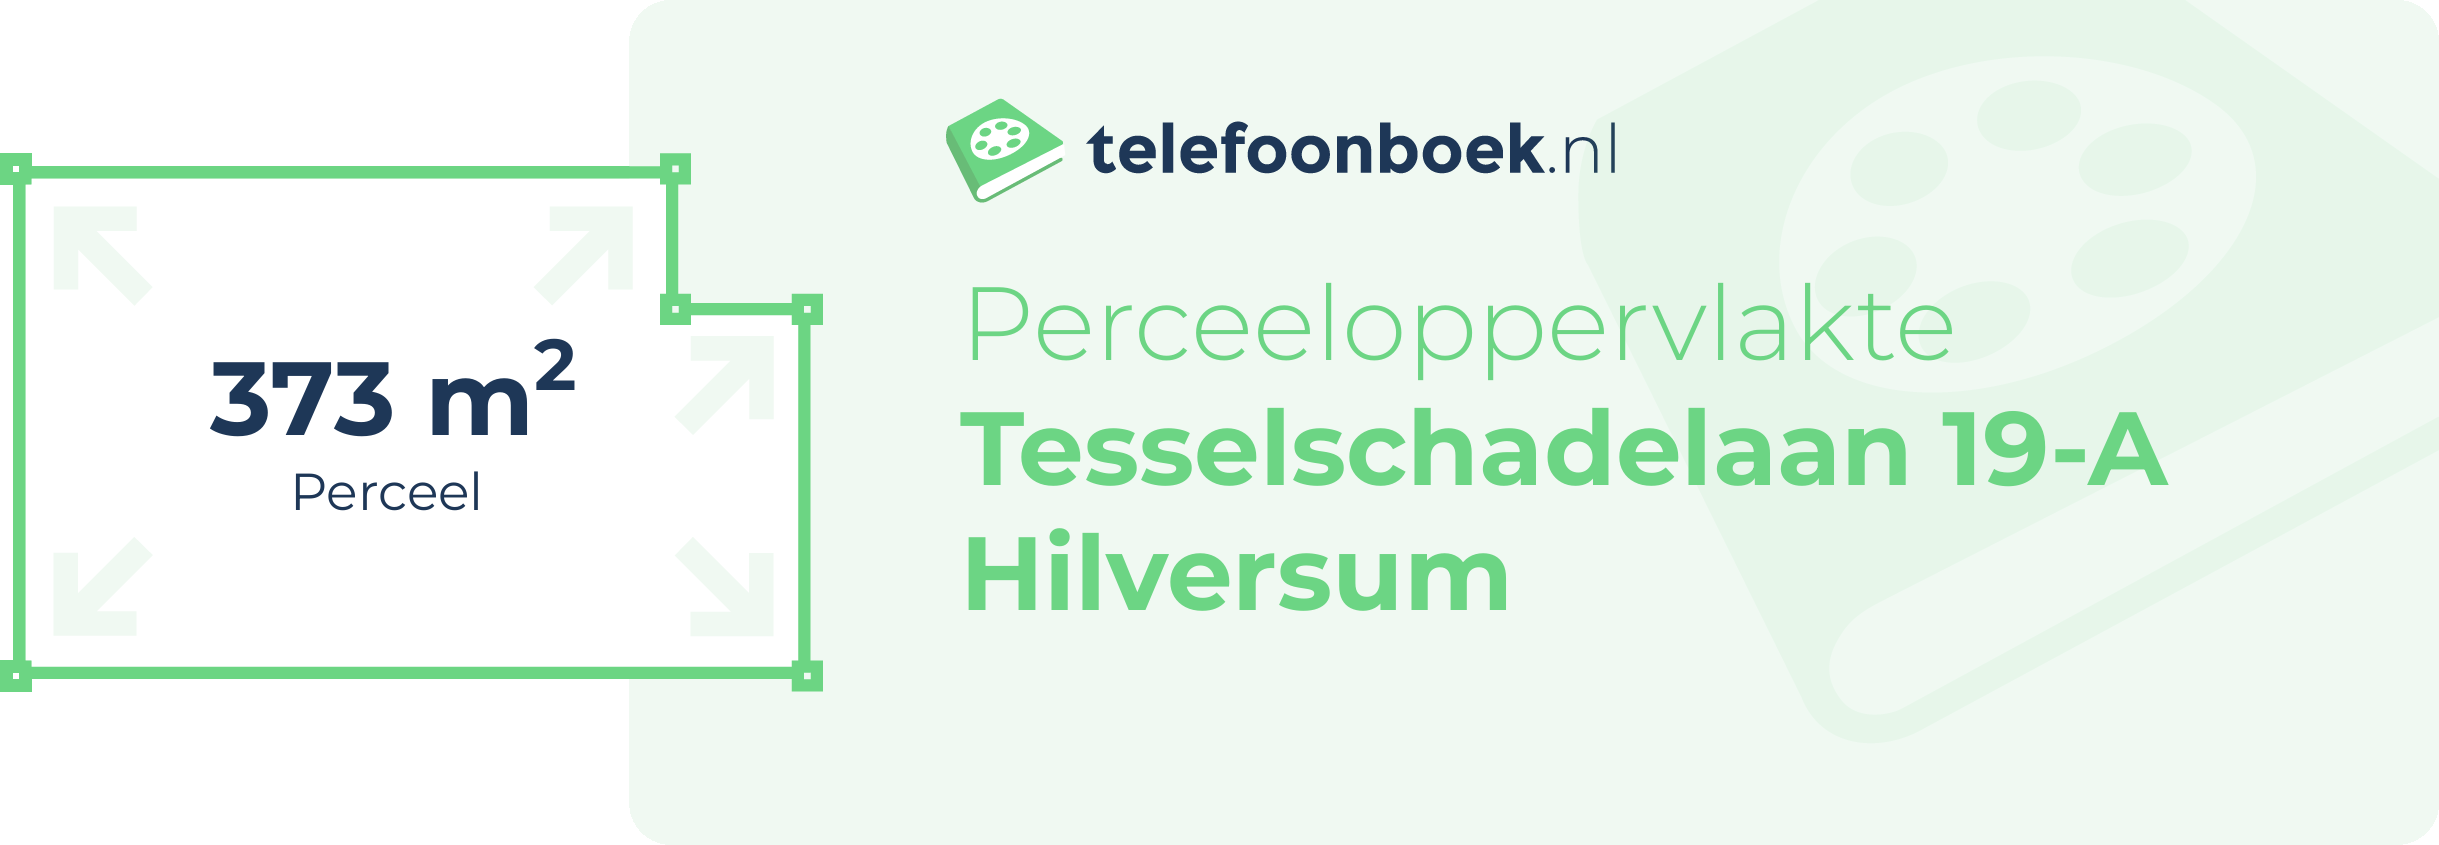 Perceeloppervlakte Tesselschadelaan 19-A Hilversum